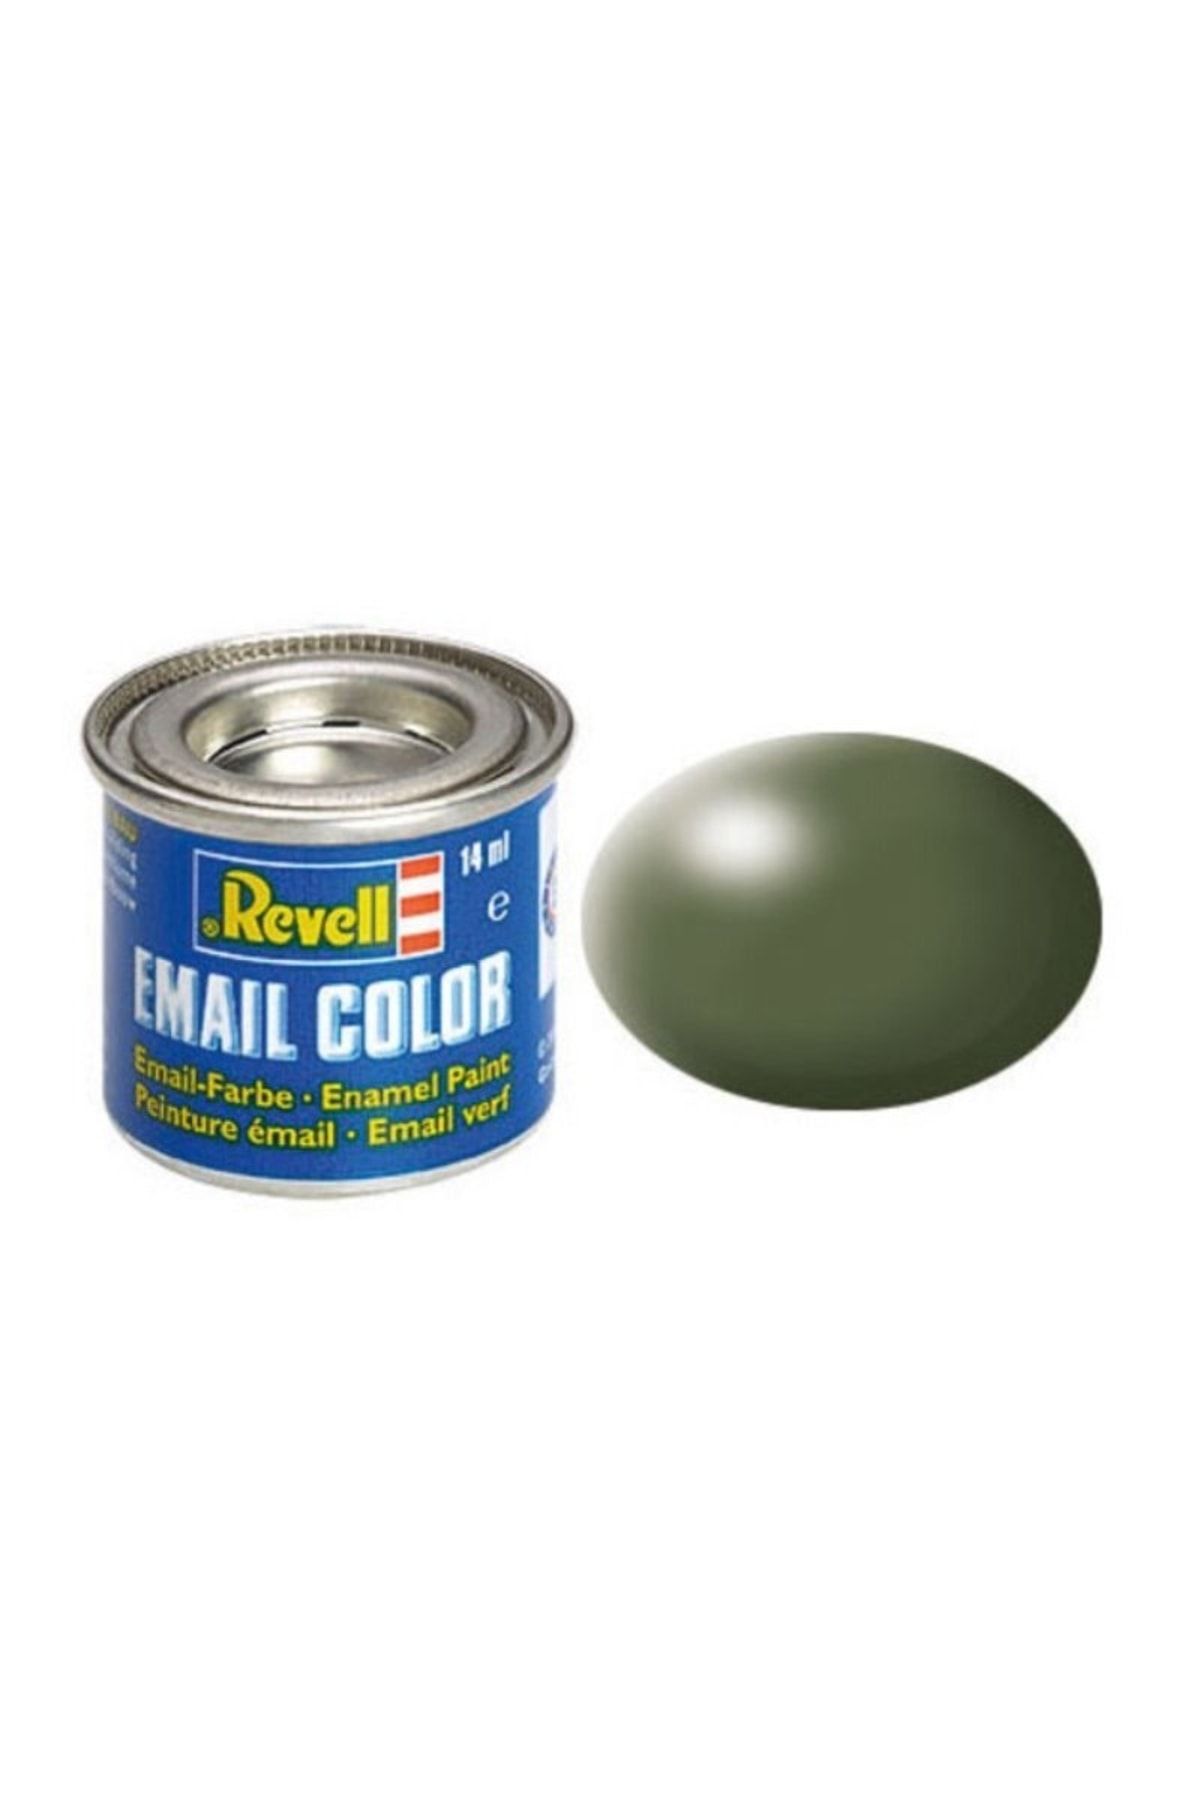 REVELL Maket Boyası Email Color Yarı Parlak Zeytin Yeşili-32361